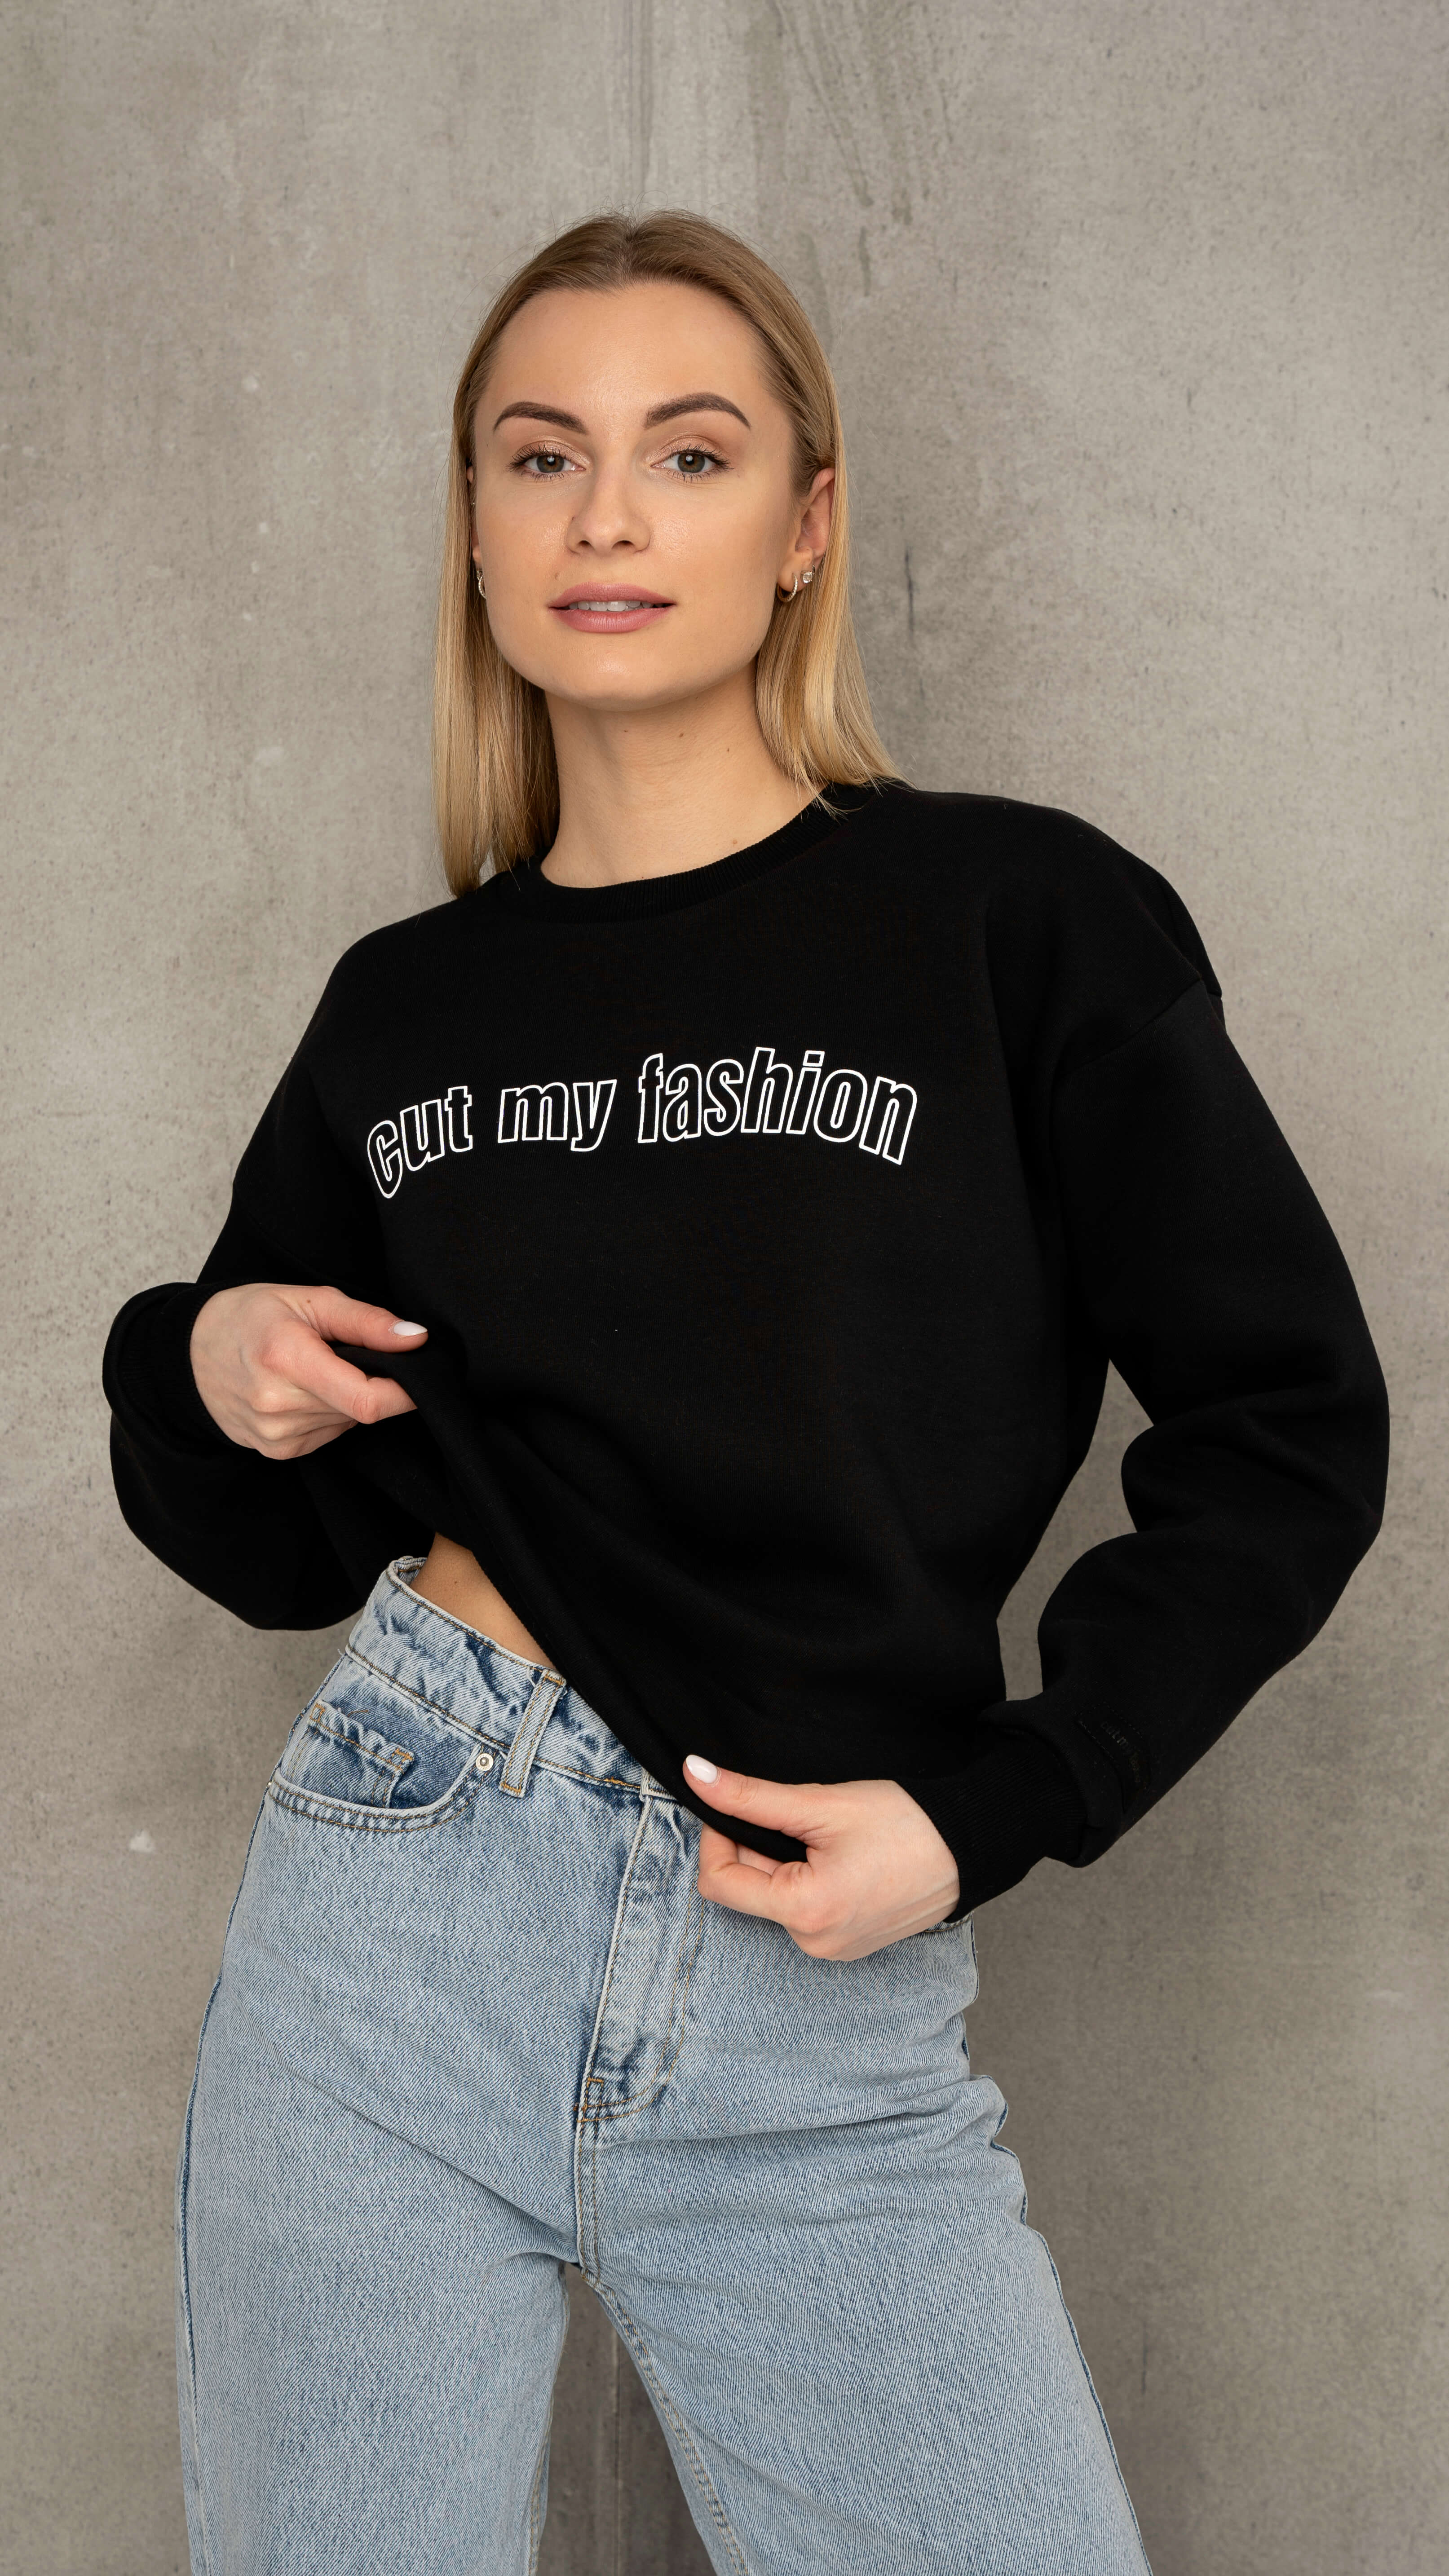 Juodos spalvos oversized moteriškas džemperis cutmyfashion